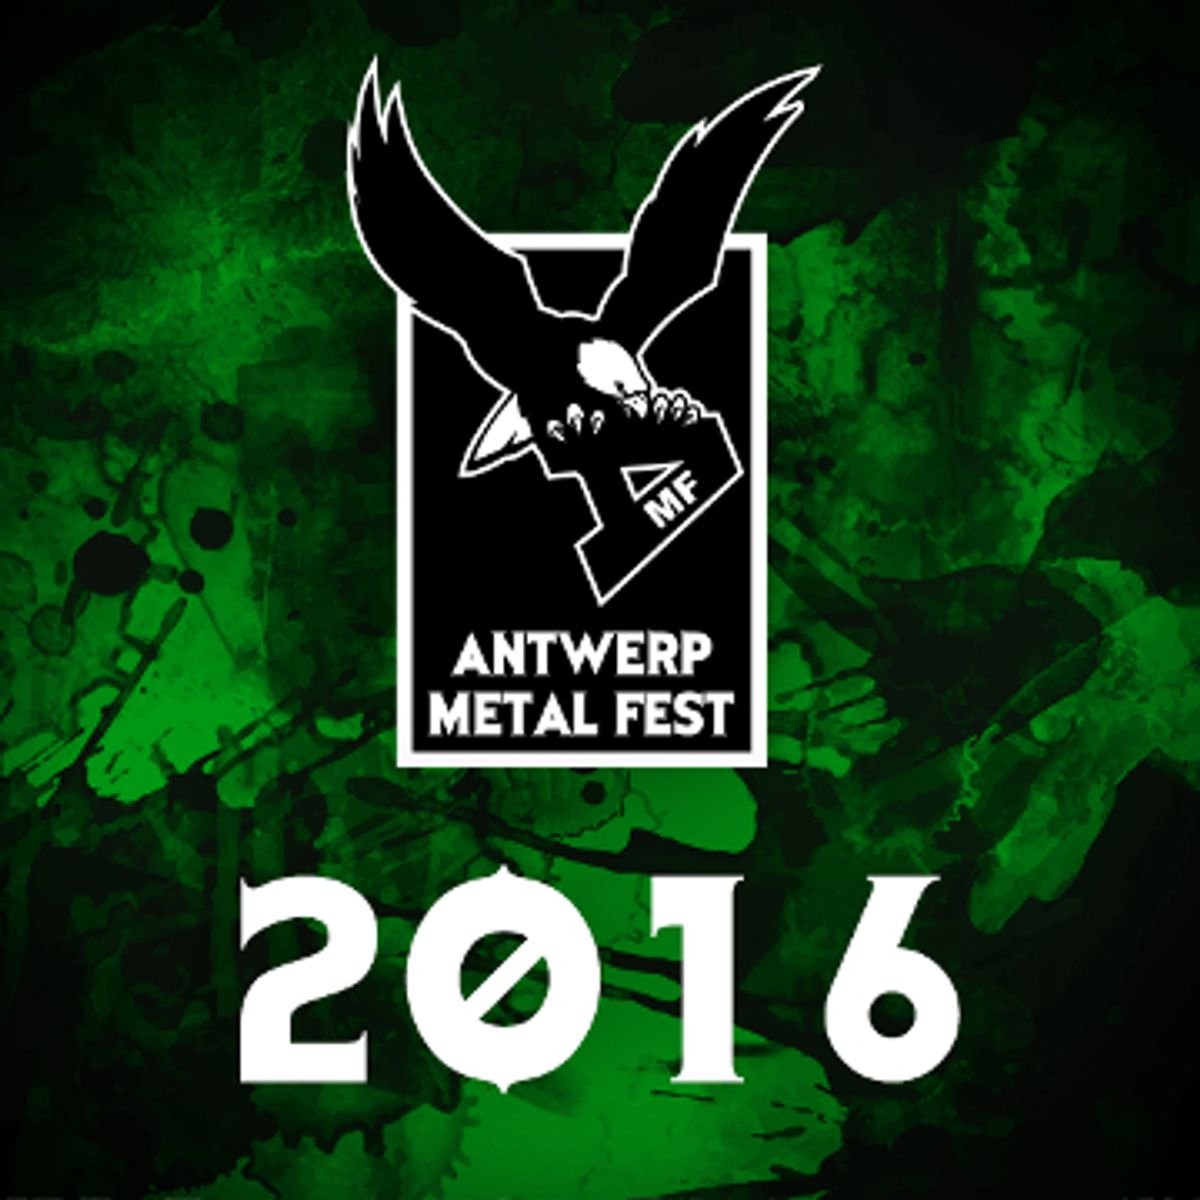 Antwerp Metal Fest 2016: Antwerpen goes metal